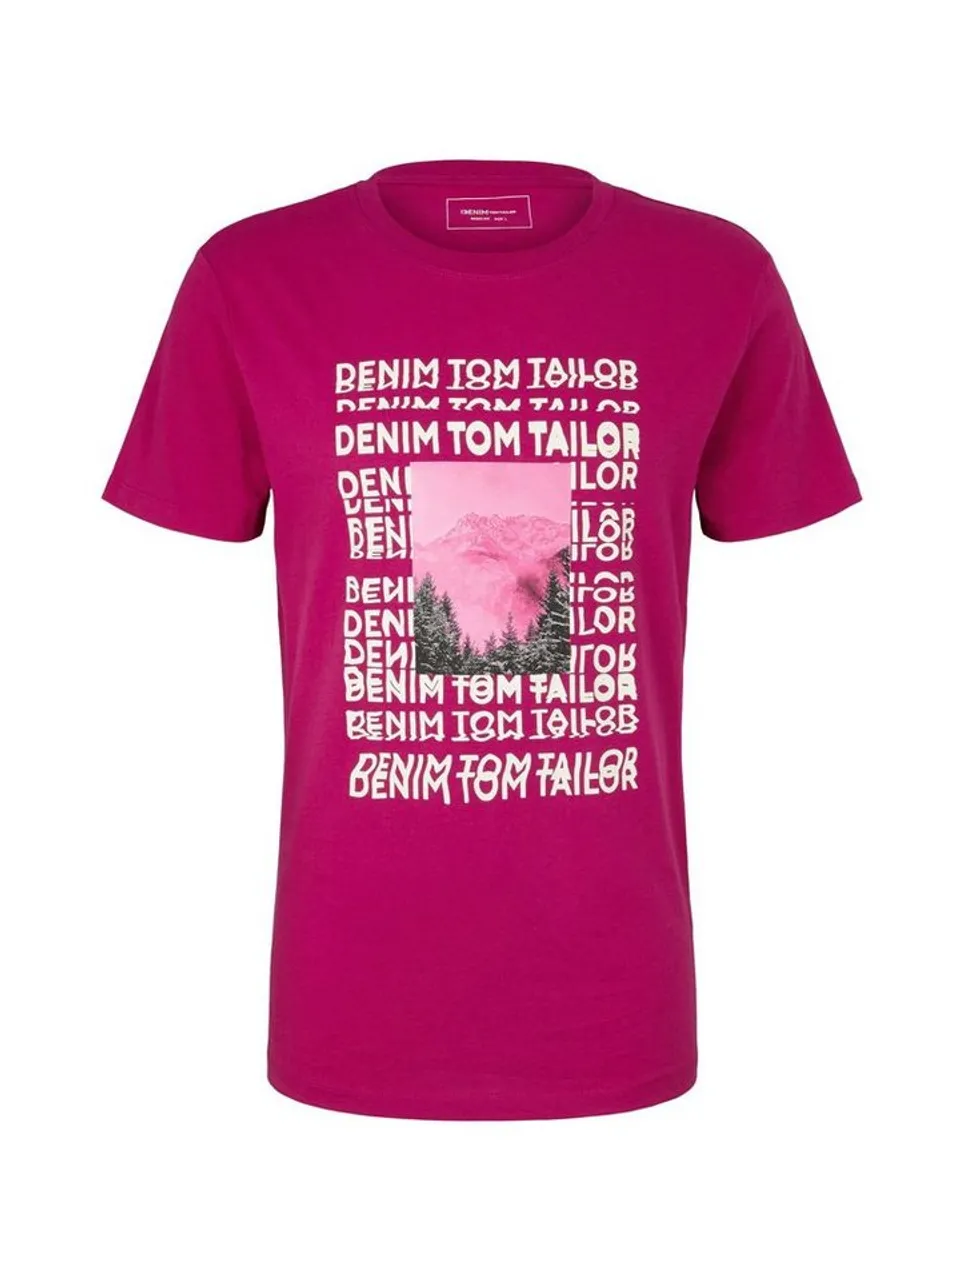 TOM TAILOR Denim T-Shirt